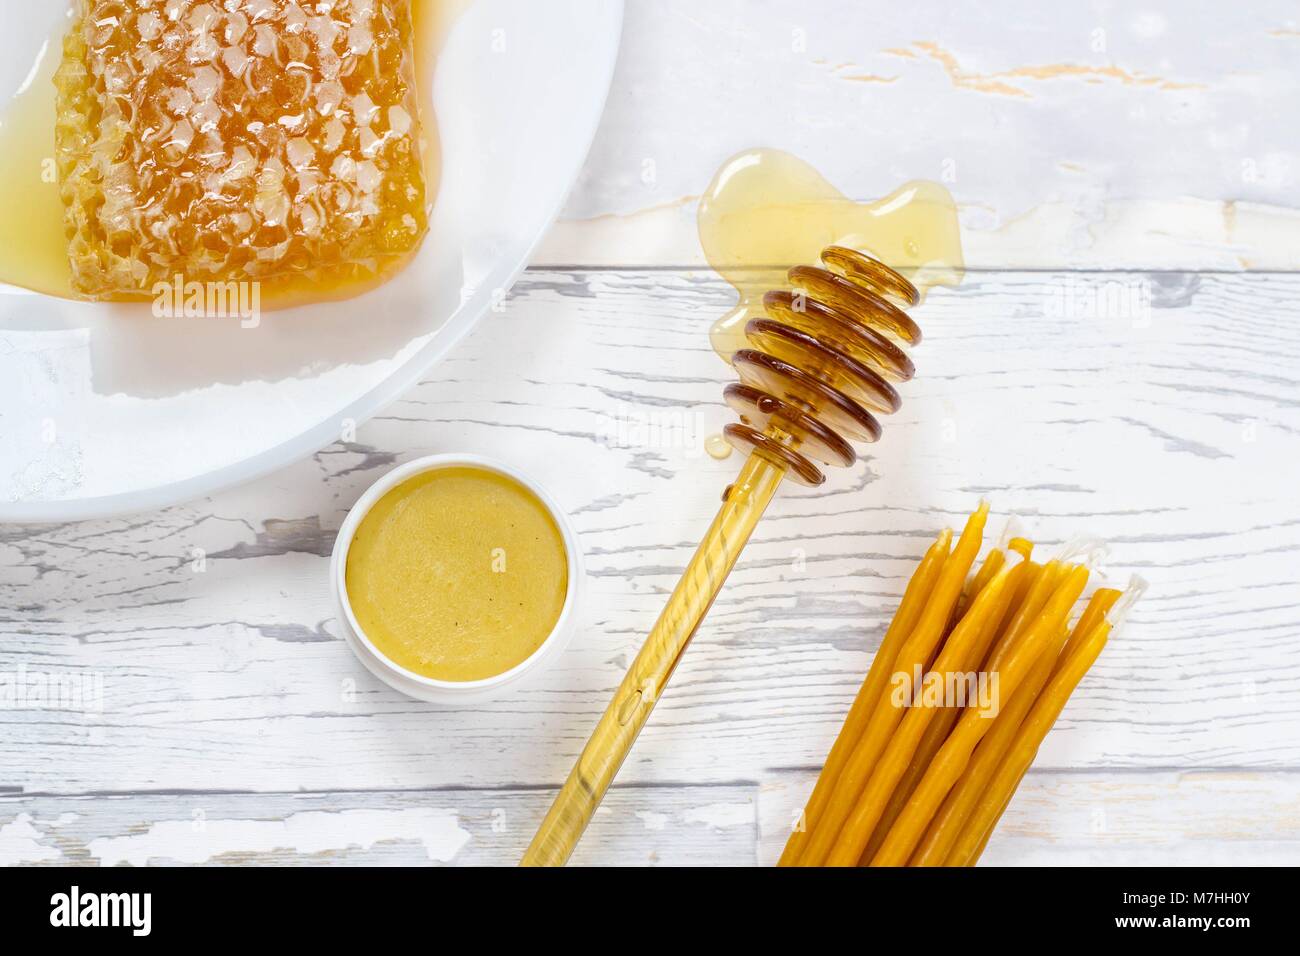 Panal de miel orgánica, bálsamo labial y velas de cera natural de madera sobre fondo blanco. Foto de stock